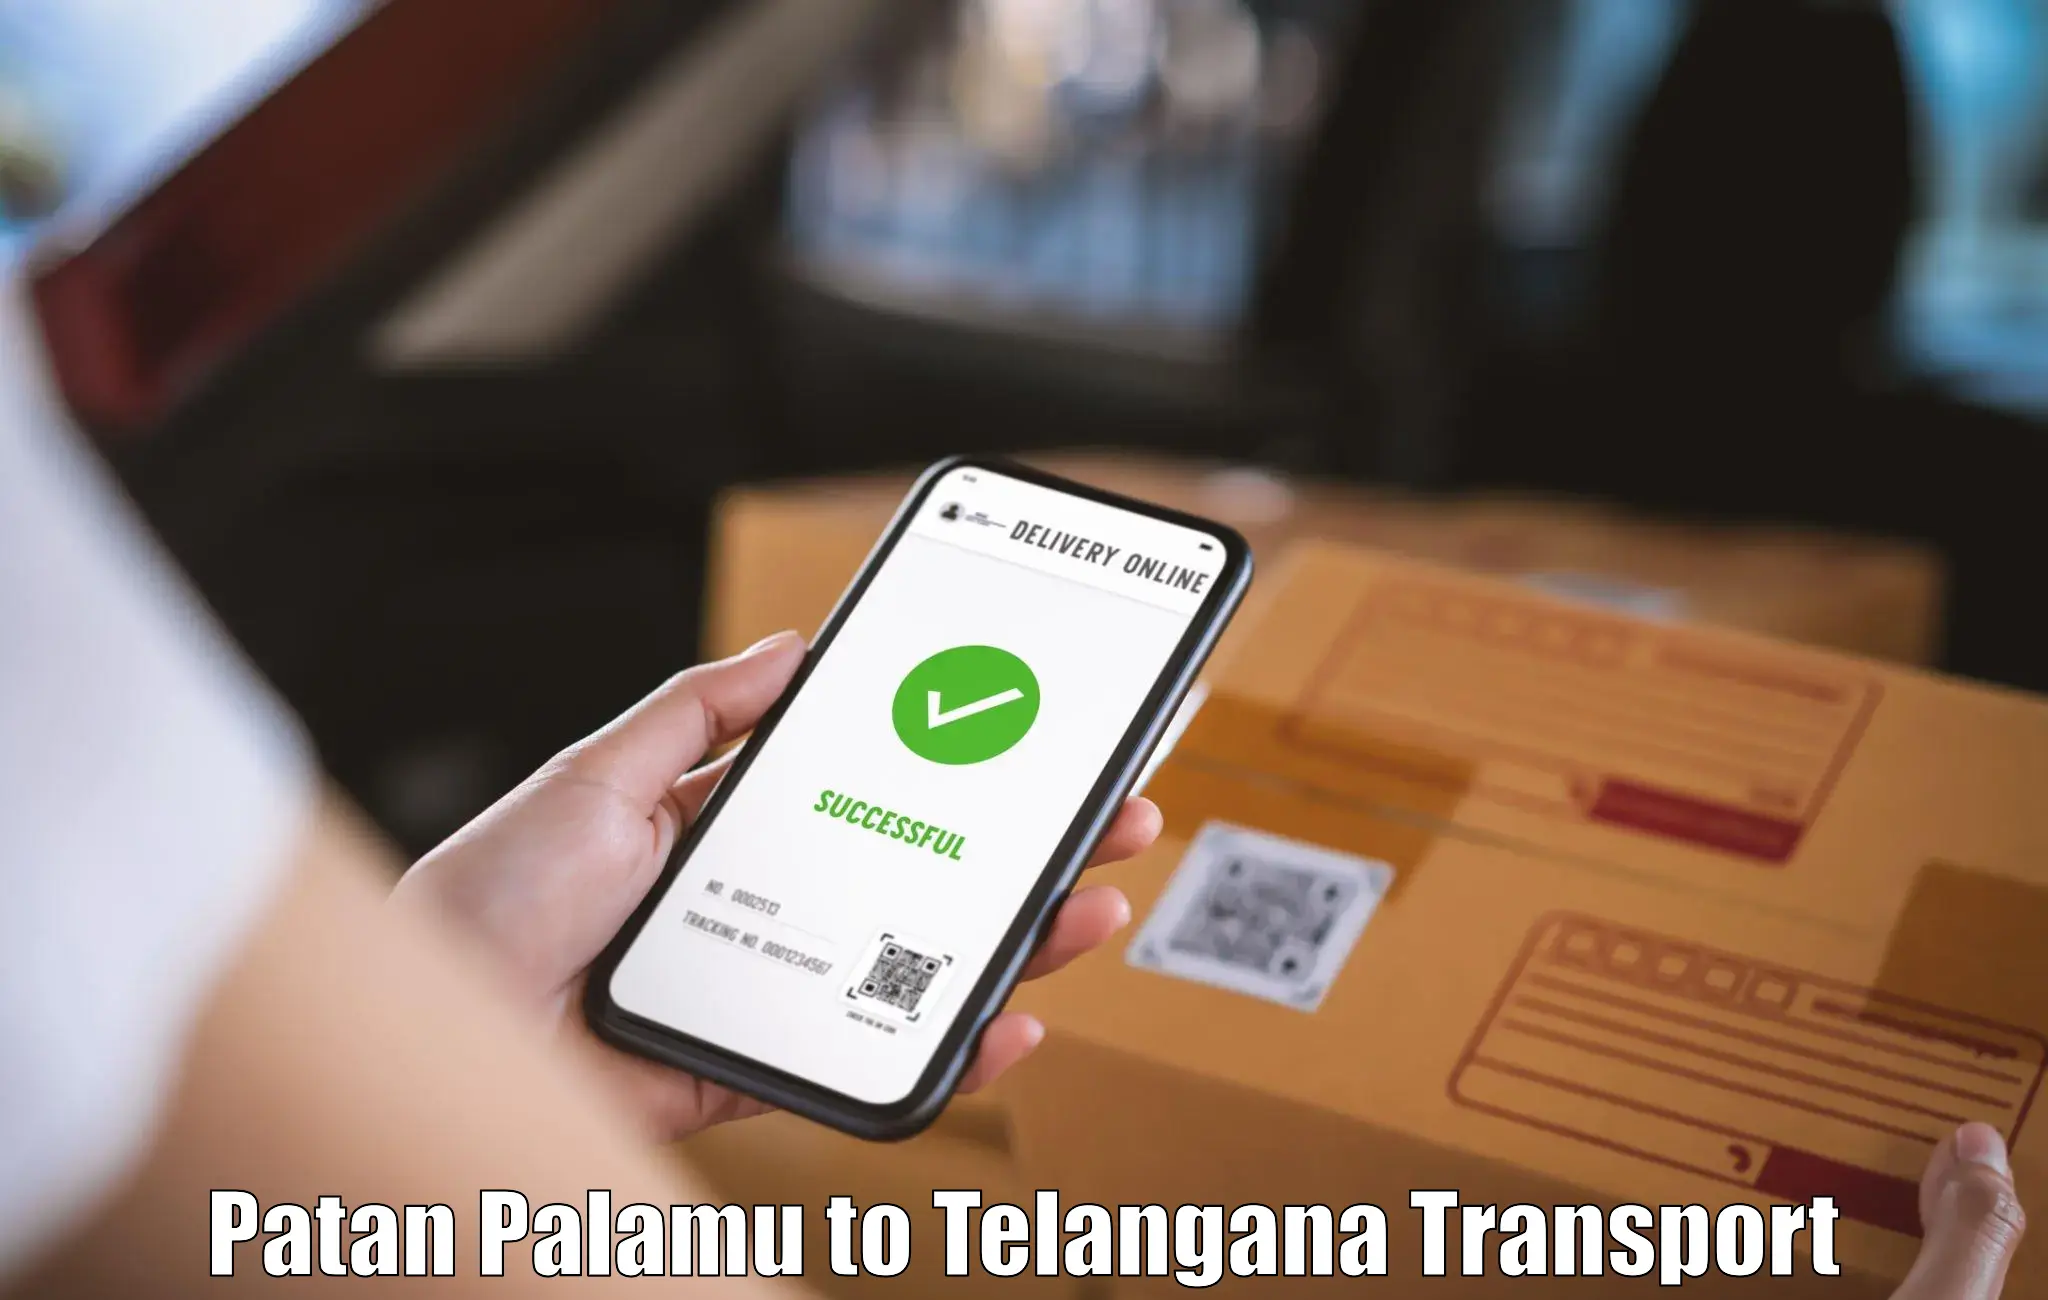 Logistics transportation services Patan Palamu to Karimnagar